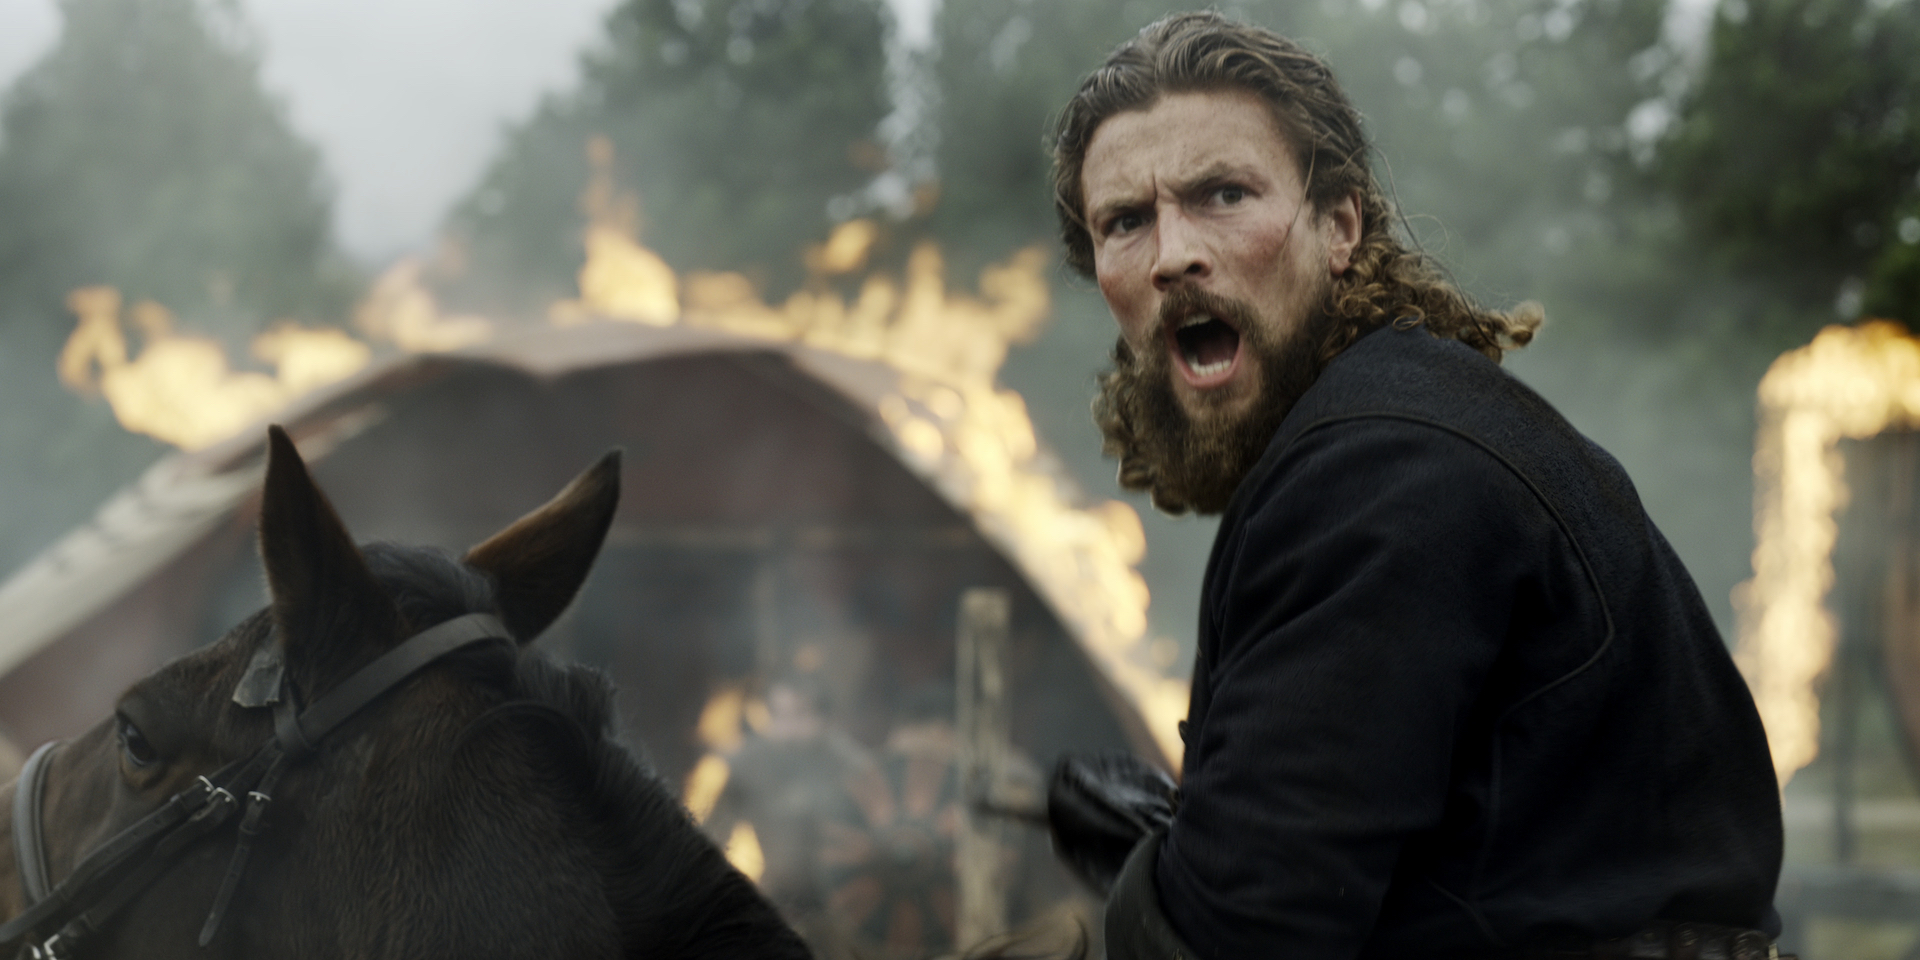 Season 2 of Vikings: Valhalla premieres January 12 on Netflix